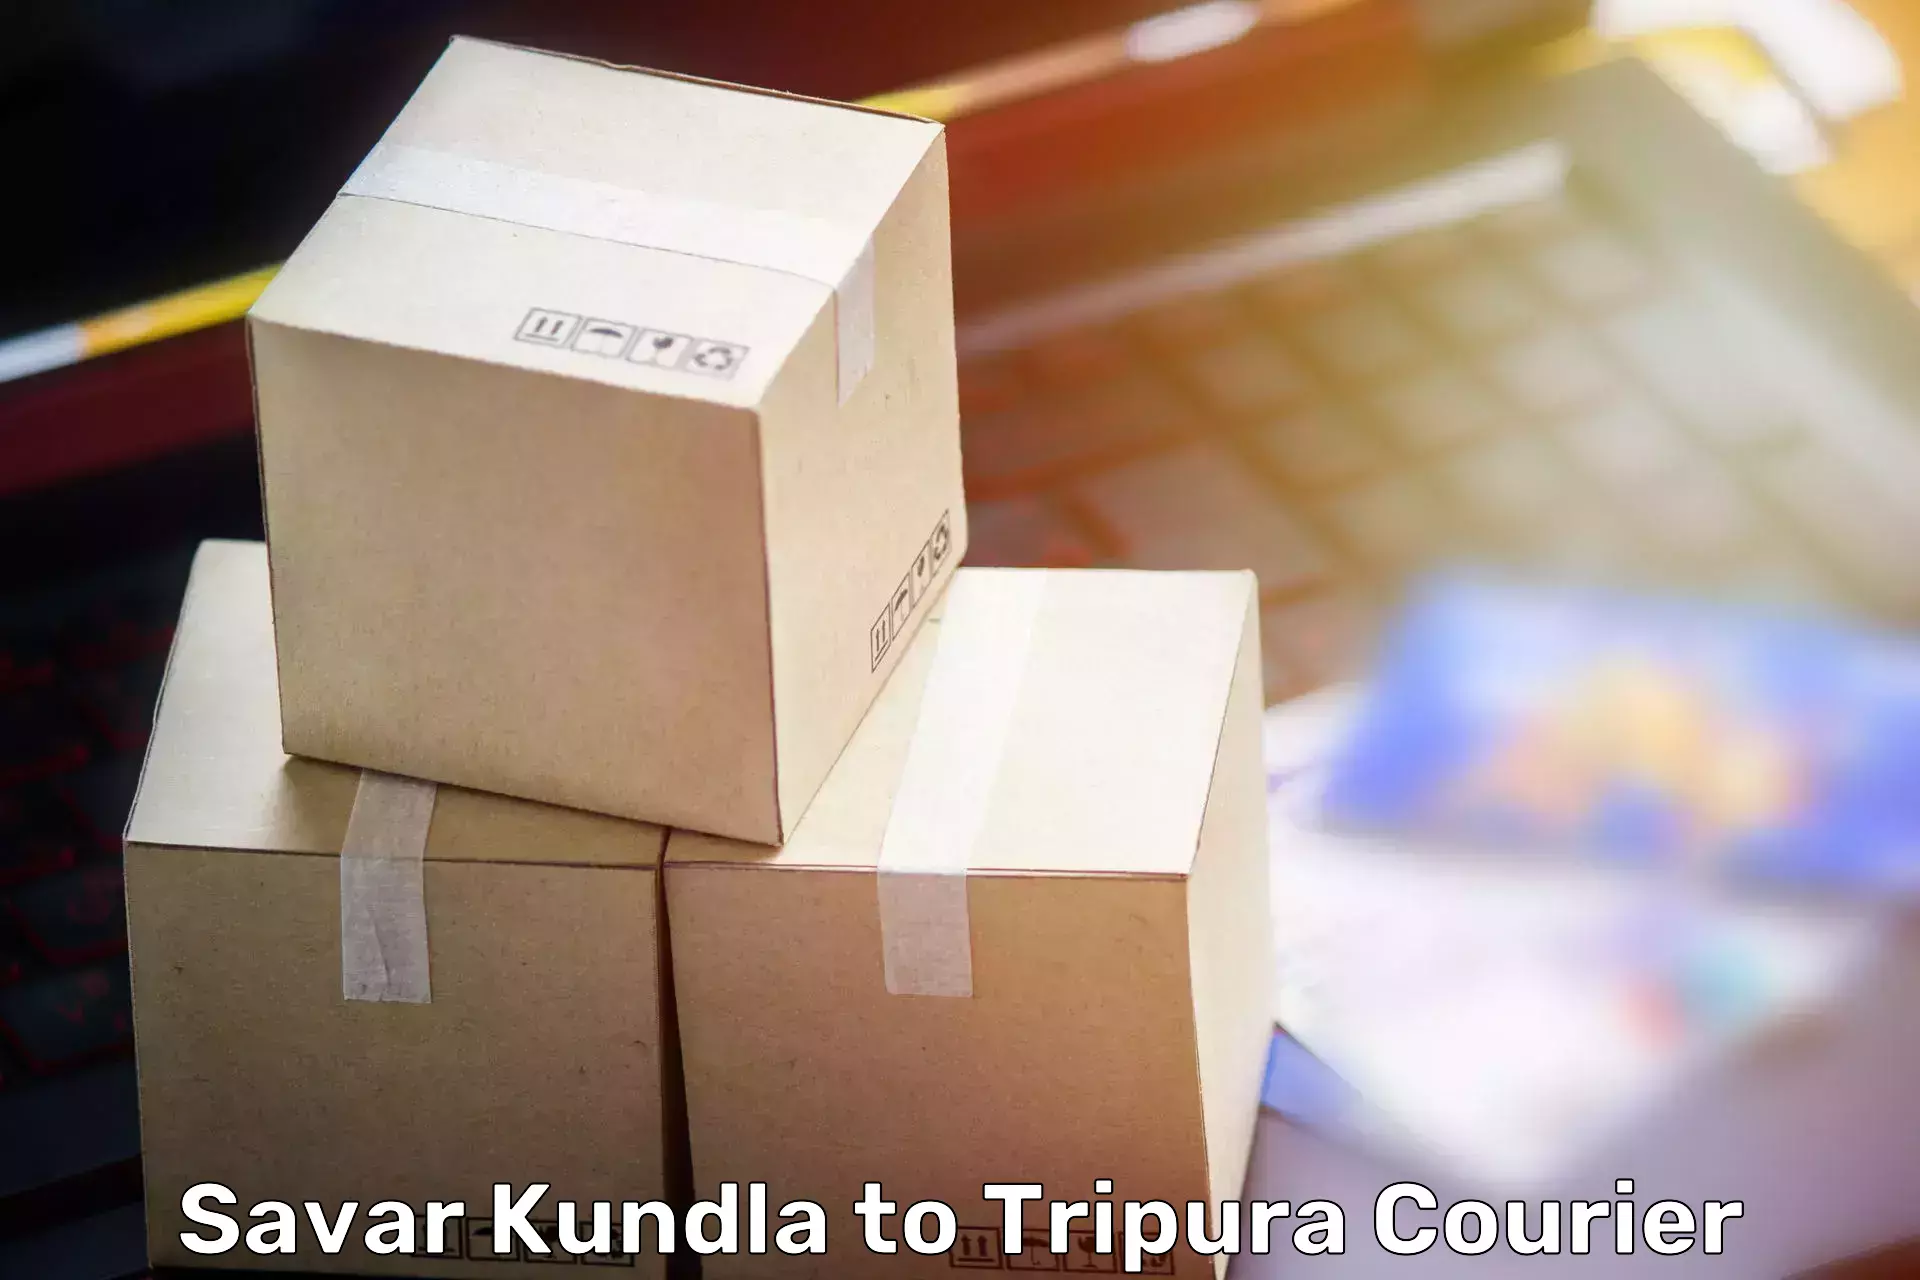 Household moving experts Savar Kundla to Agartala